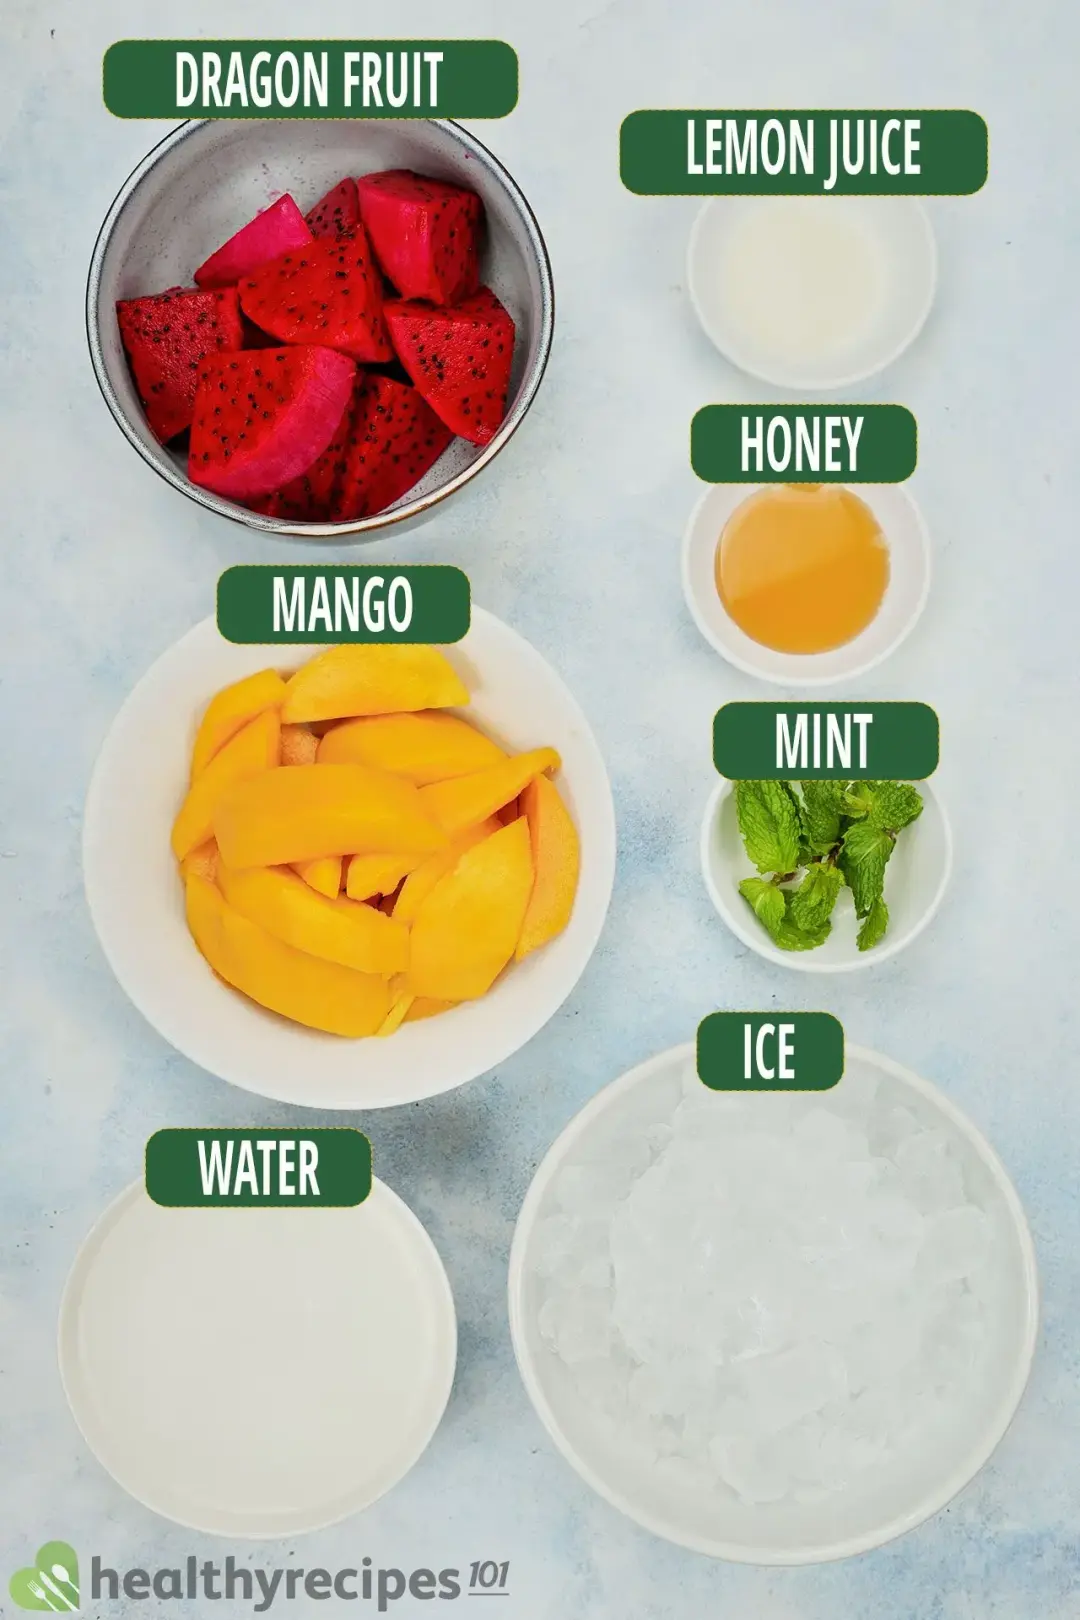 Ingredients for Mango Dragon Fruit Smoothie